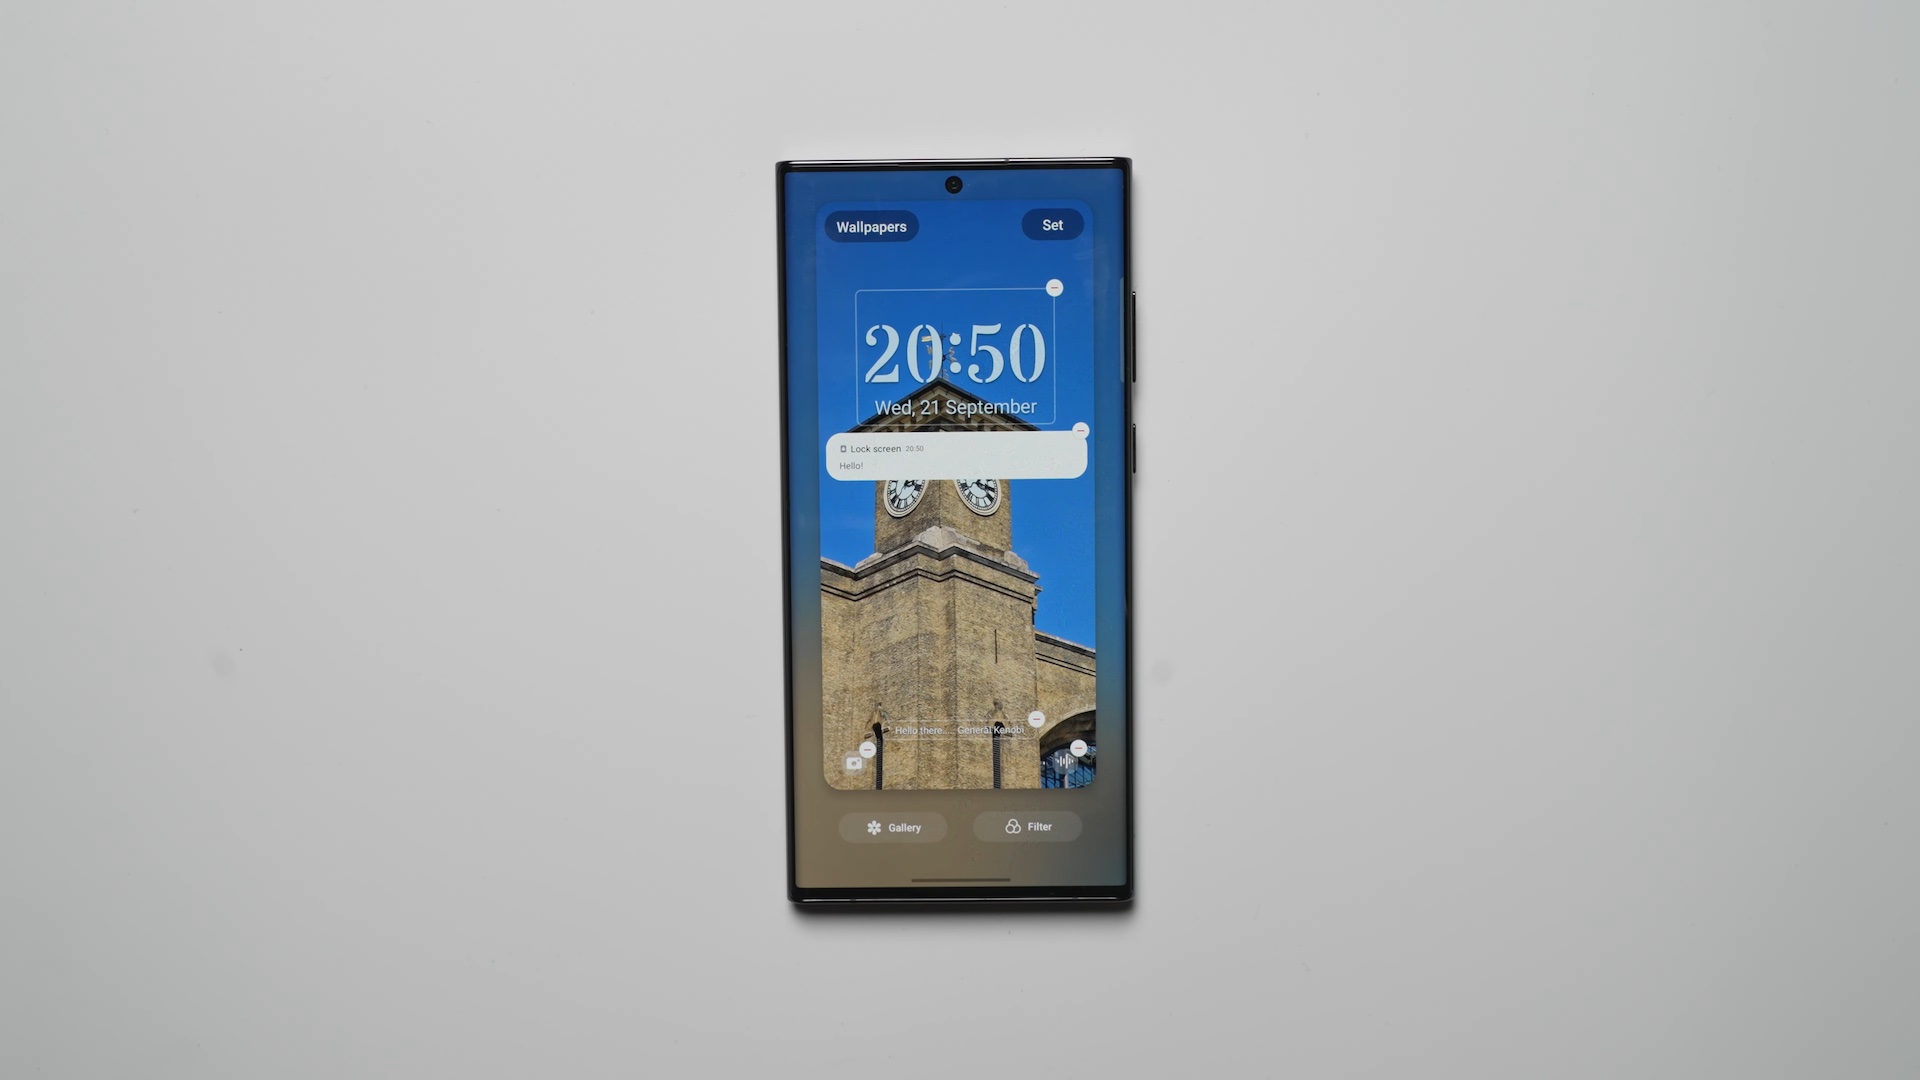 Lock screen 2023 schedule wallpapers - iPhone depth filter